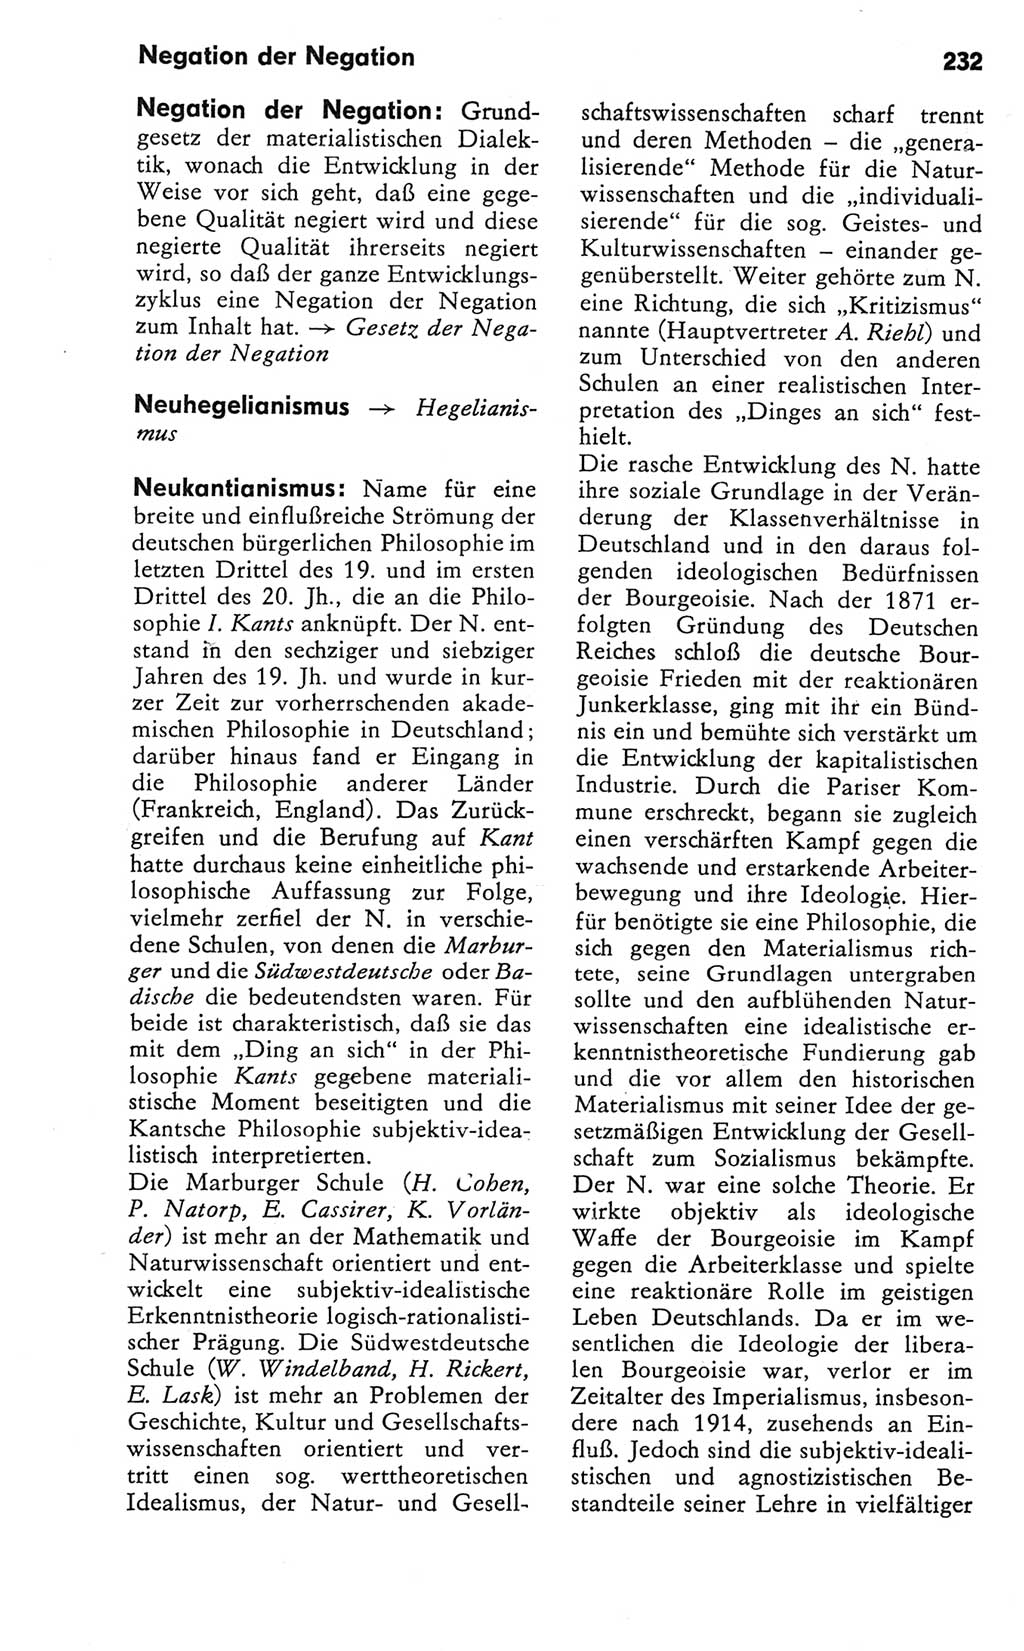 Kleines Wörterbuch der marxistisch-leninistischen Philosophie [Deutsche Demokratische Republik (DDR)] 1981, Seite 232 (Kl. Wb. ML Phil. DDR 1981, S. 232)